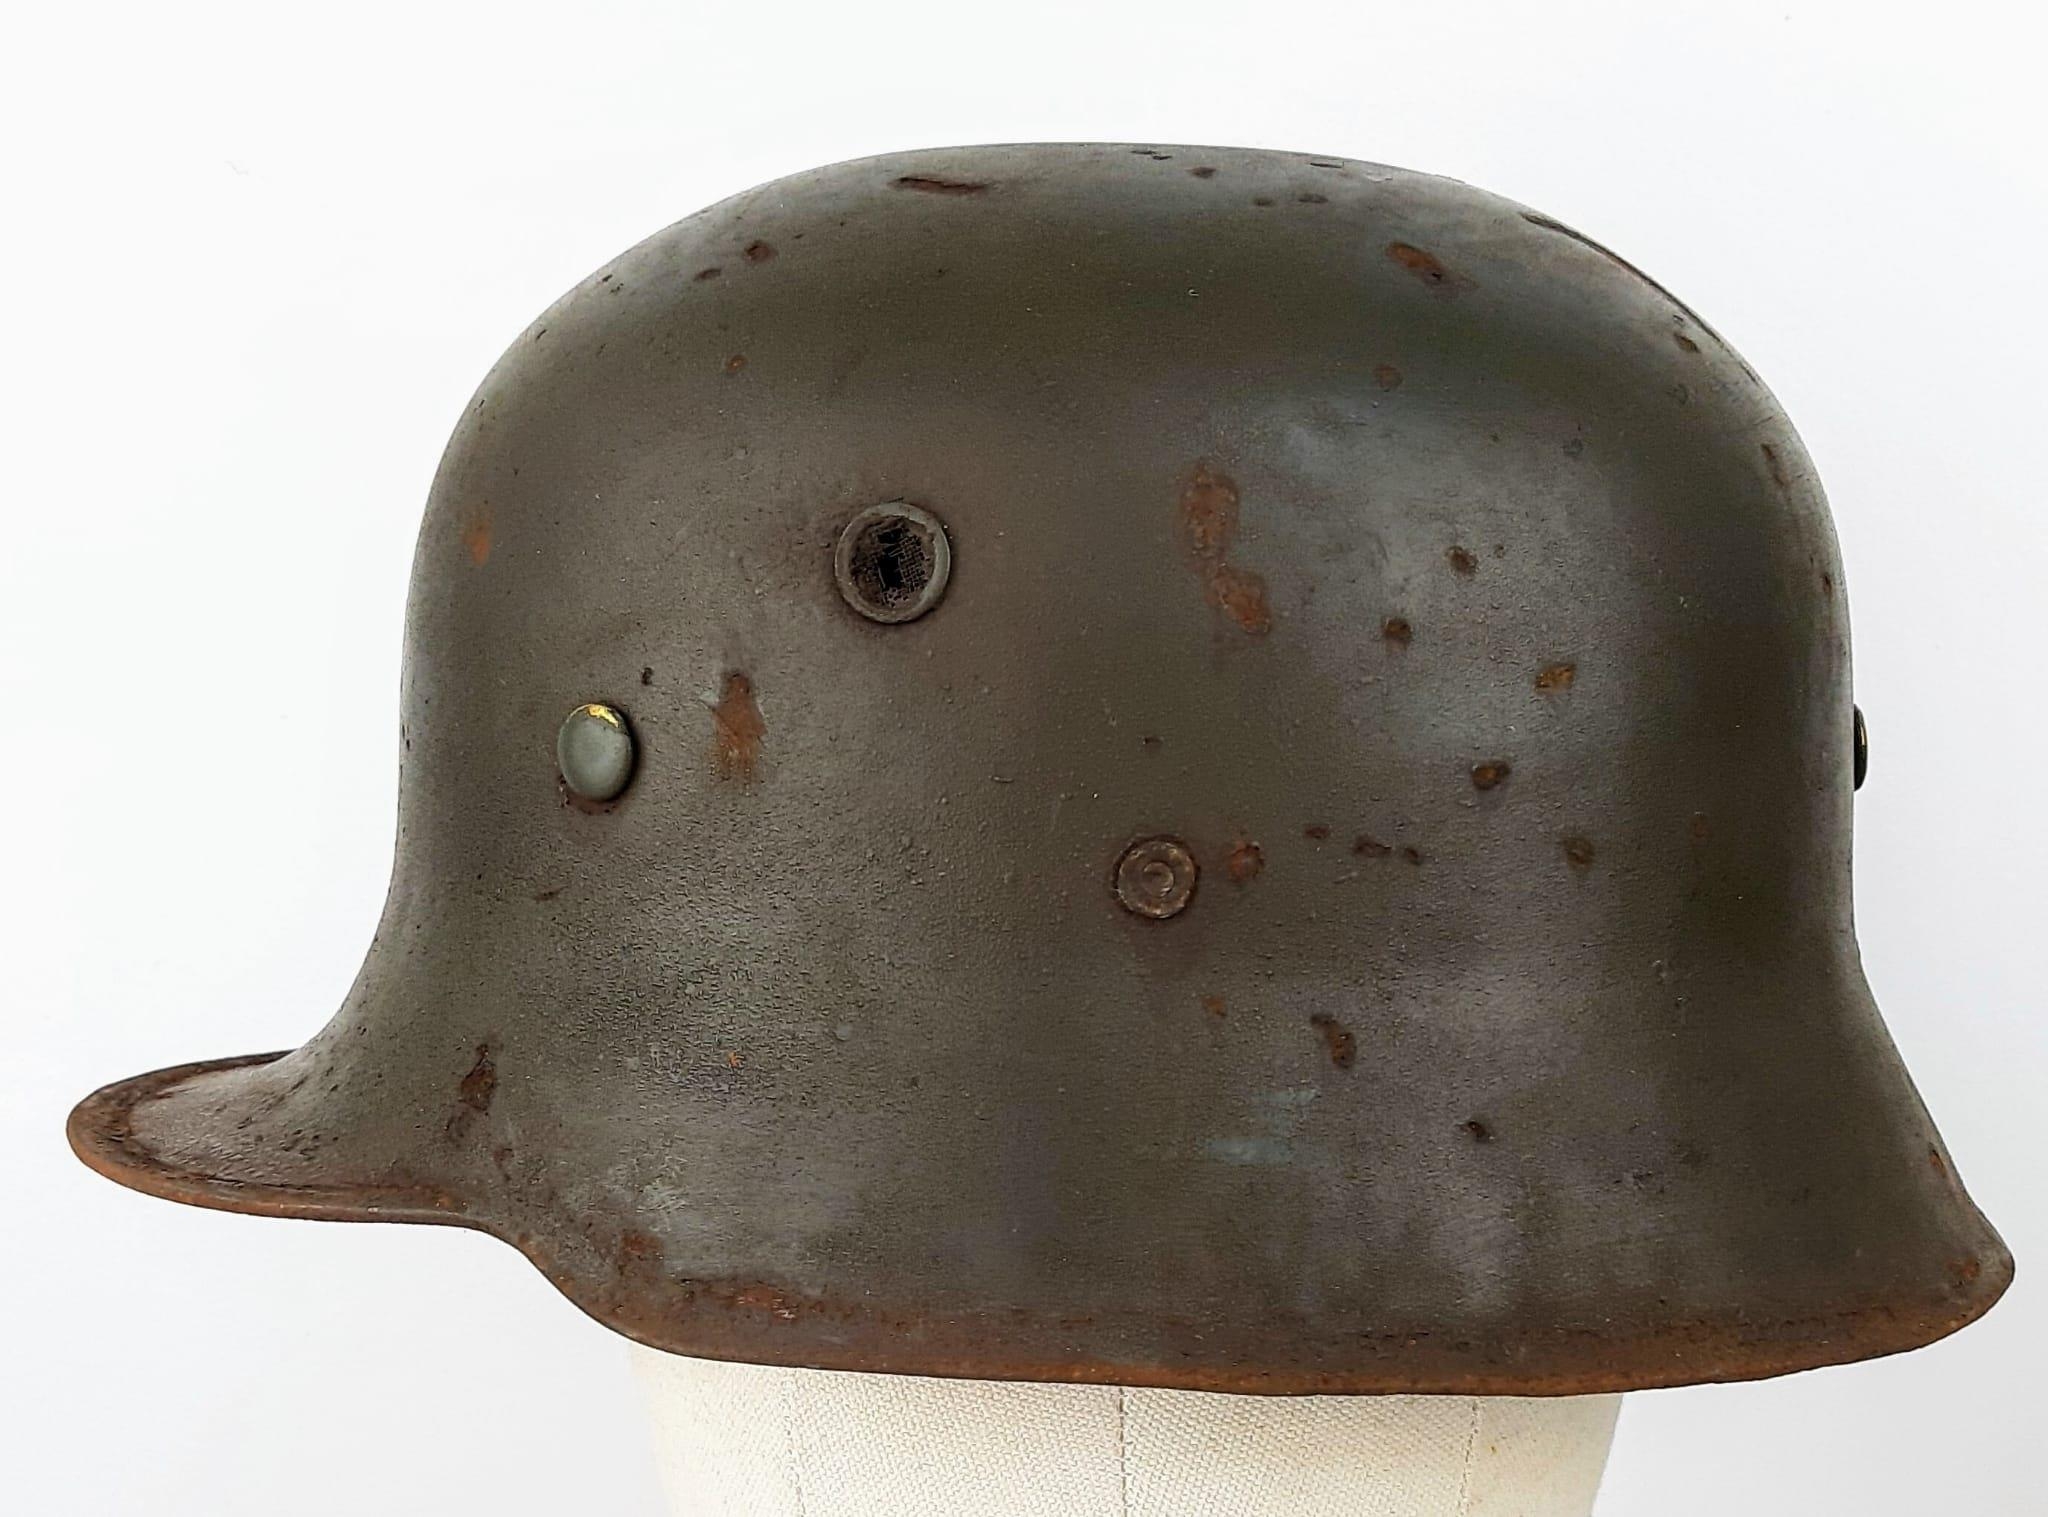 WW2 German Allgemeine SS Officers M18 Pattern Parade Stahlhelm Helmet. Dark green paintwork with